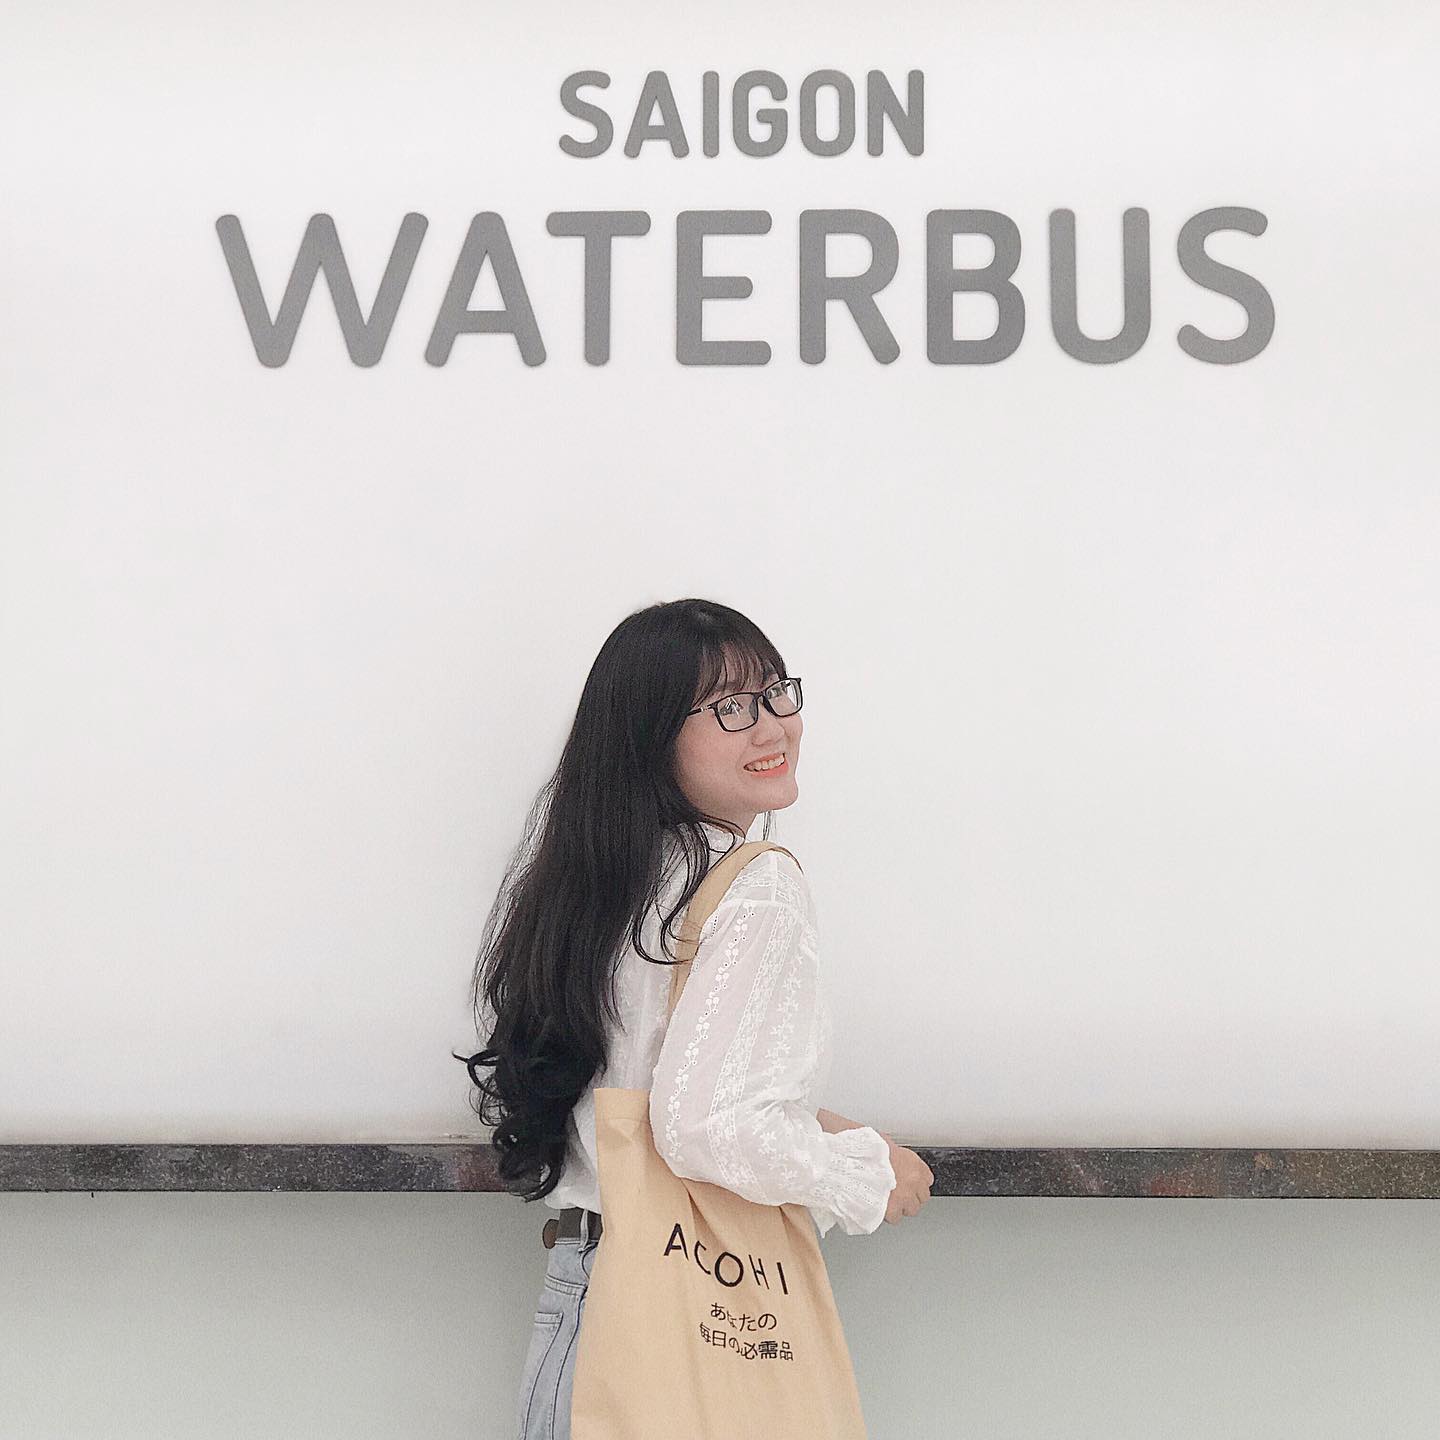 Sài Gòn water bus